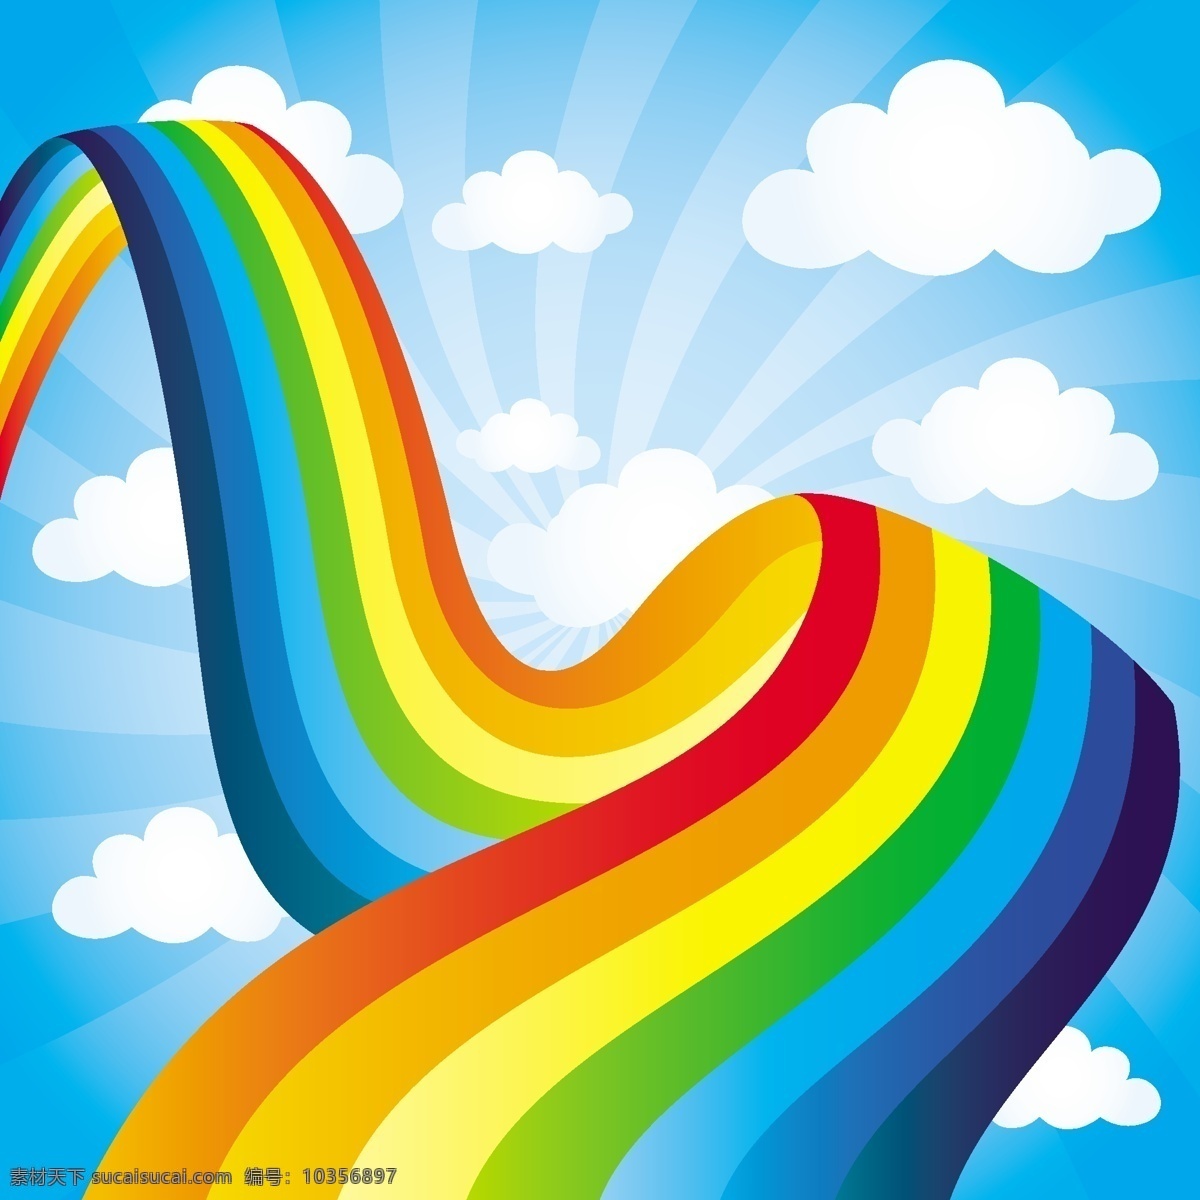 彩虹 矢量 分层 天空 云 动态素材 卡通 卡通设计 eps分层 矢量素材